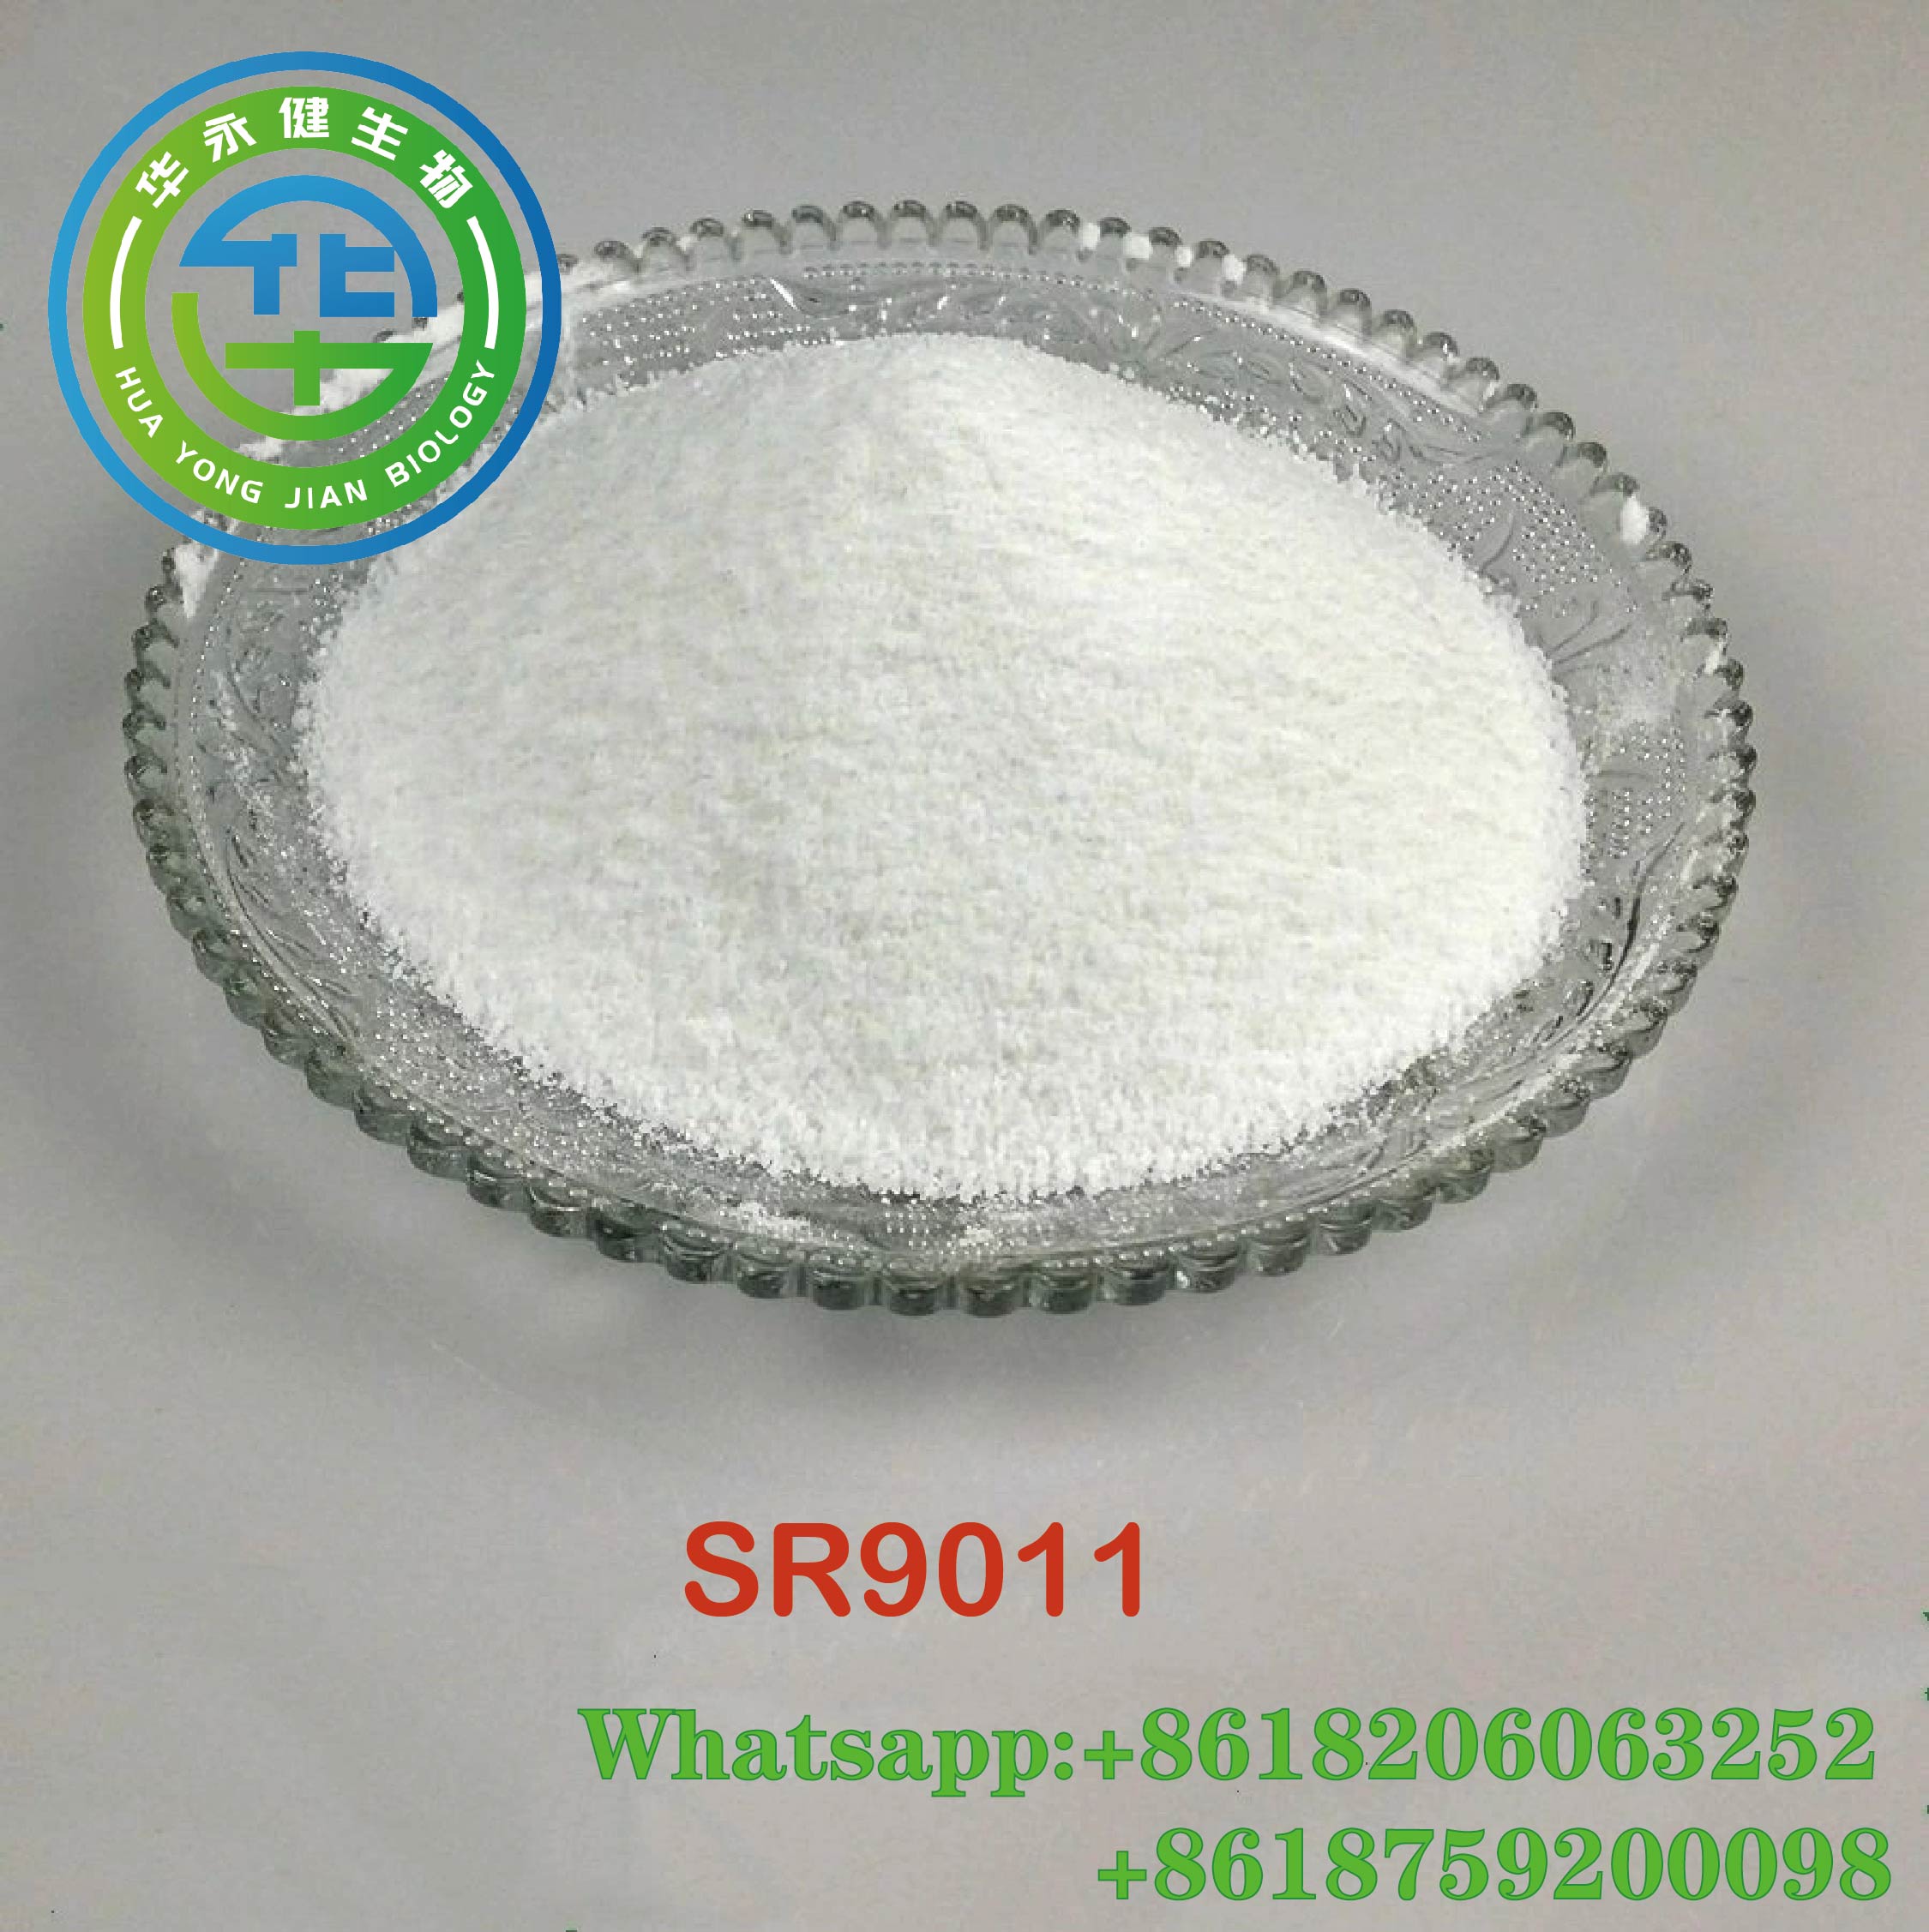 High Purity Sarms Powder SR9011Raw Powder Body Buidling No Side Effects CasNO.1379686-29-9